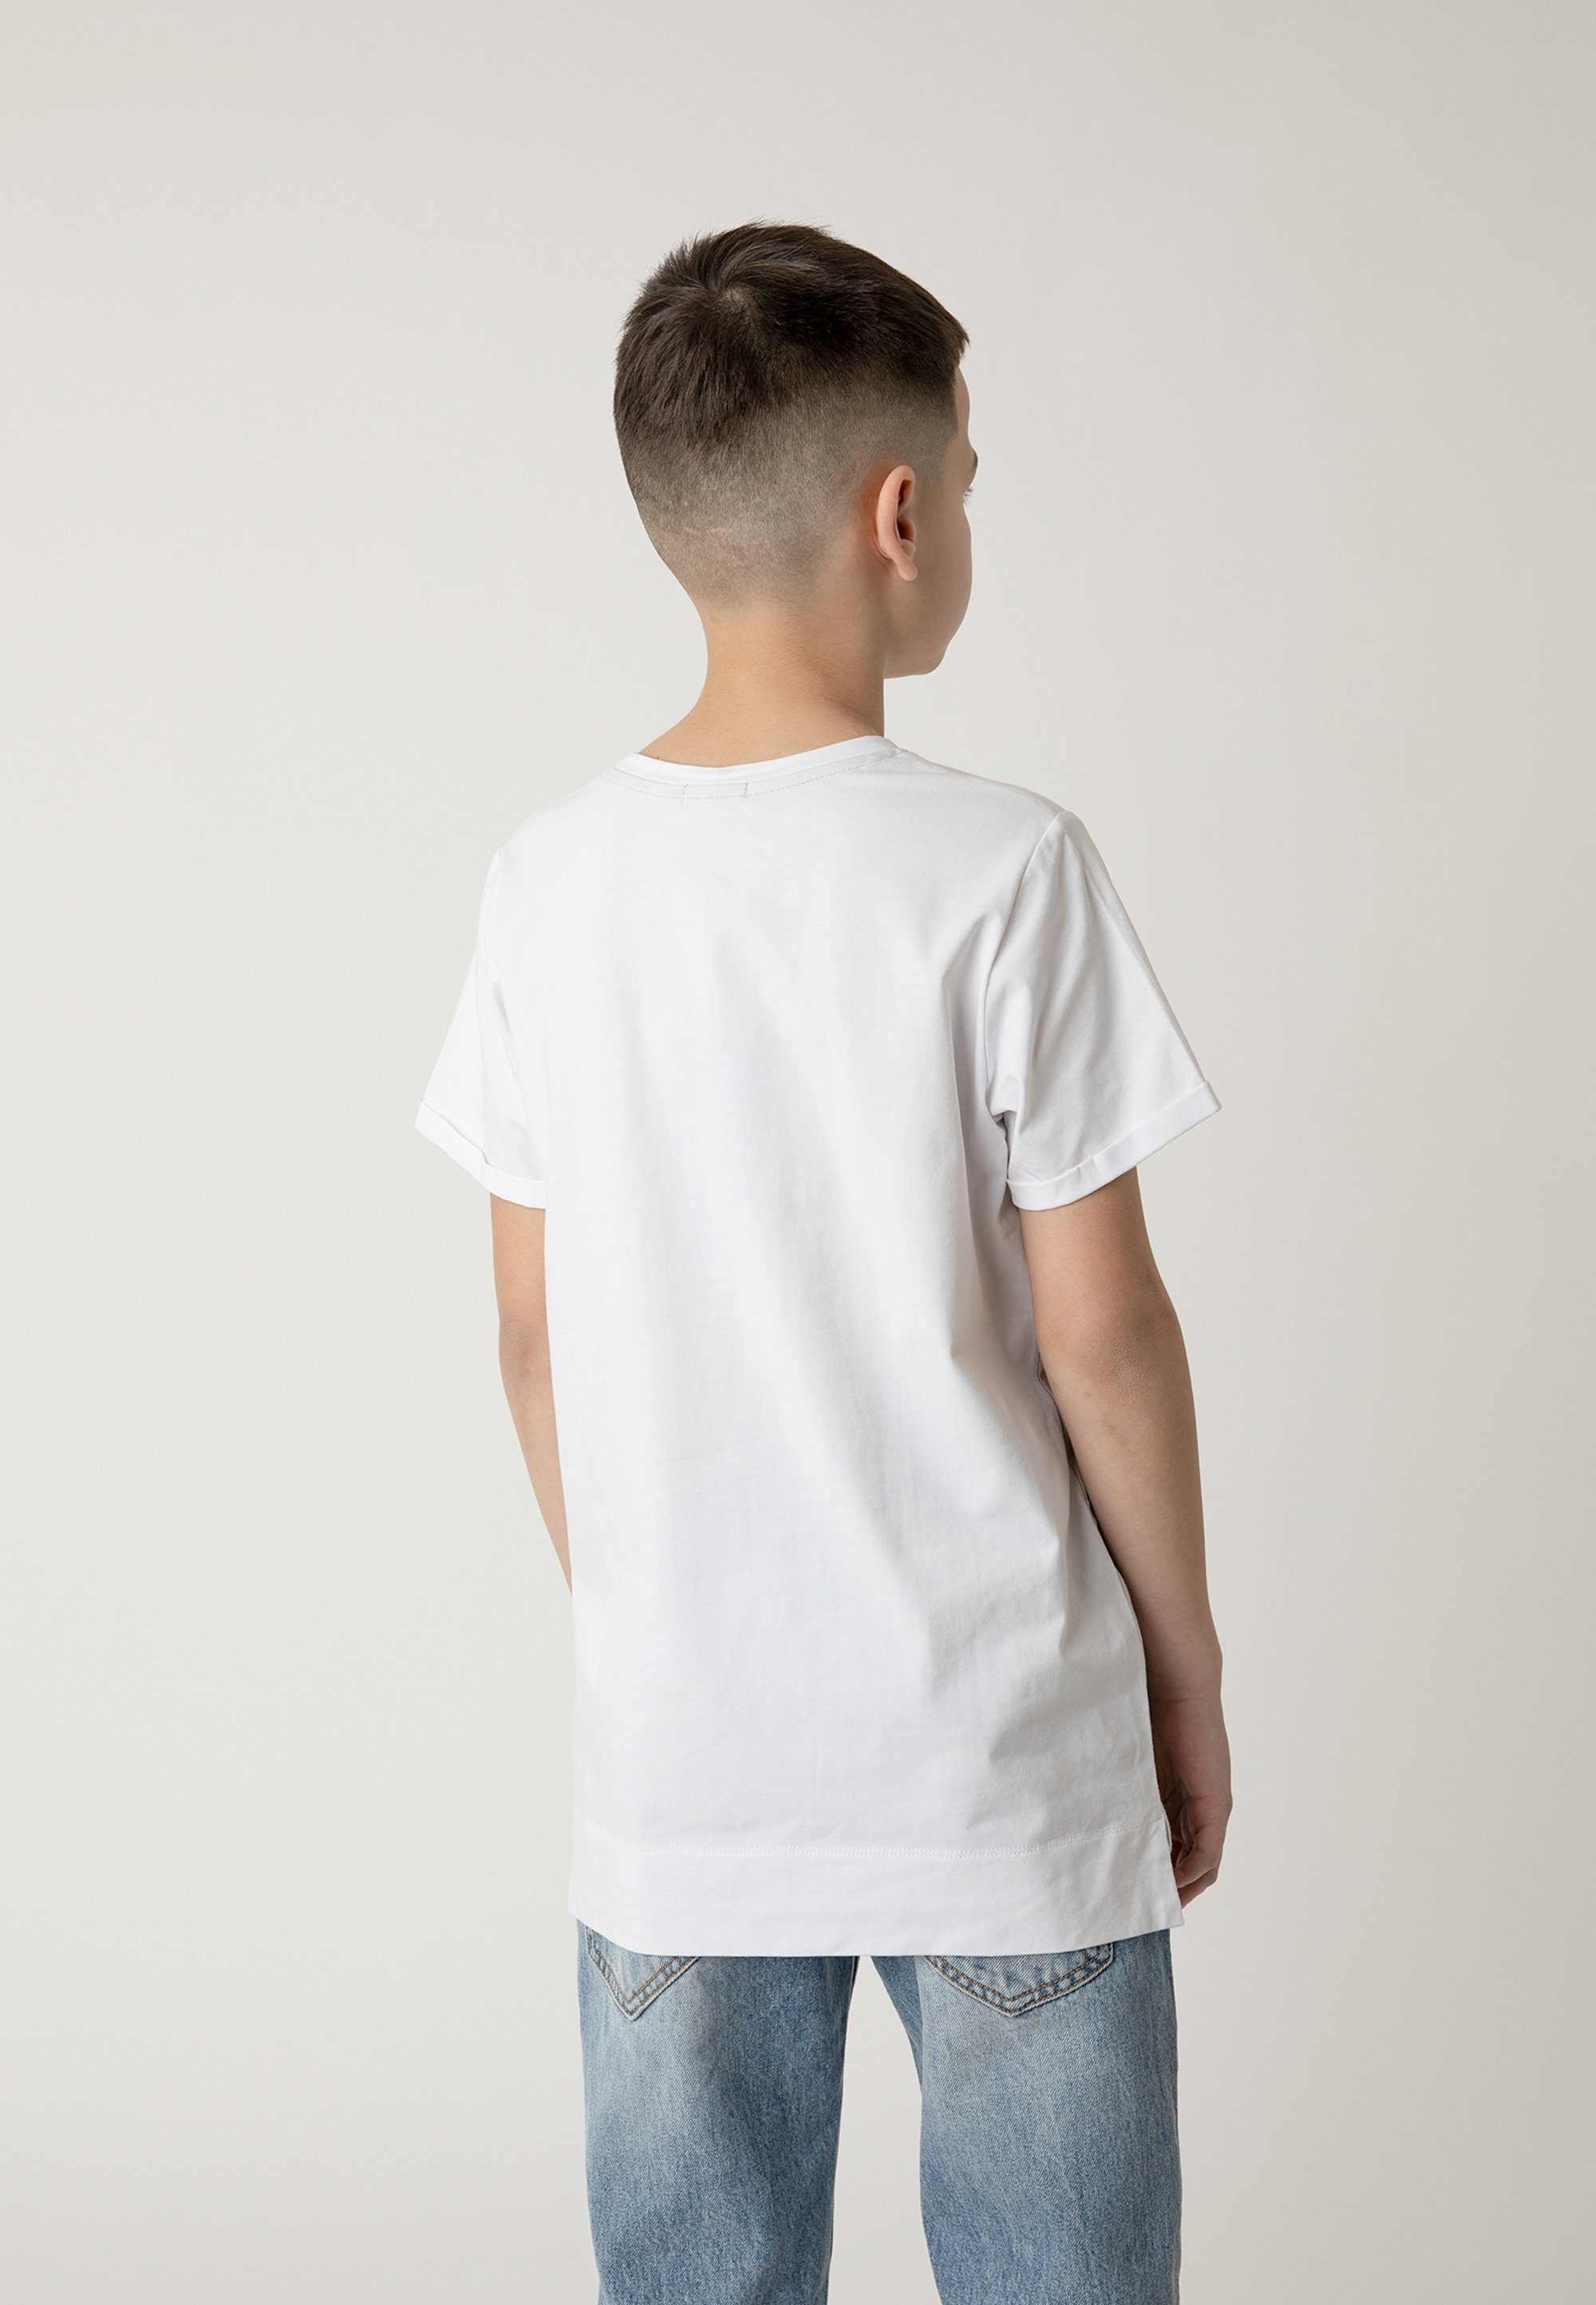 Gulliver stylischem T-Shirt mit Frontprint